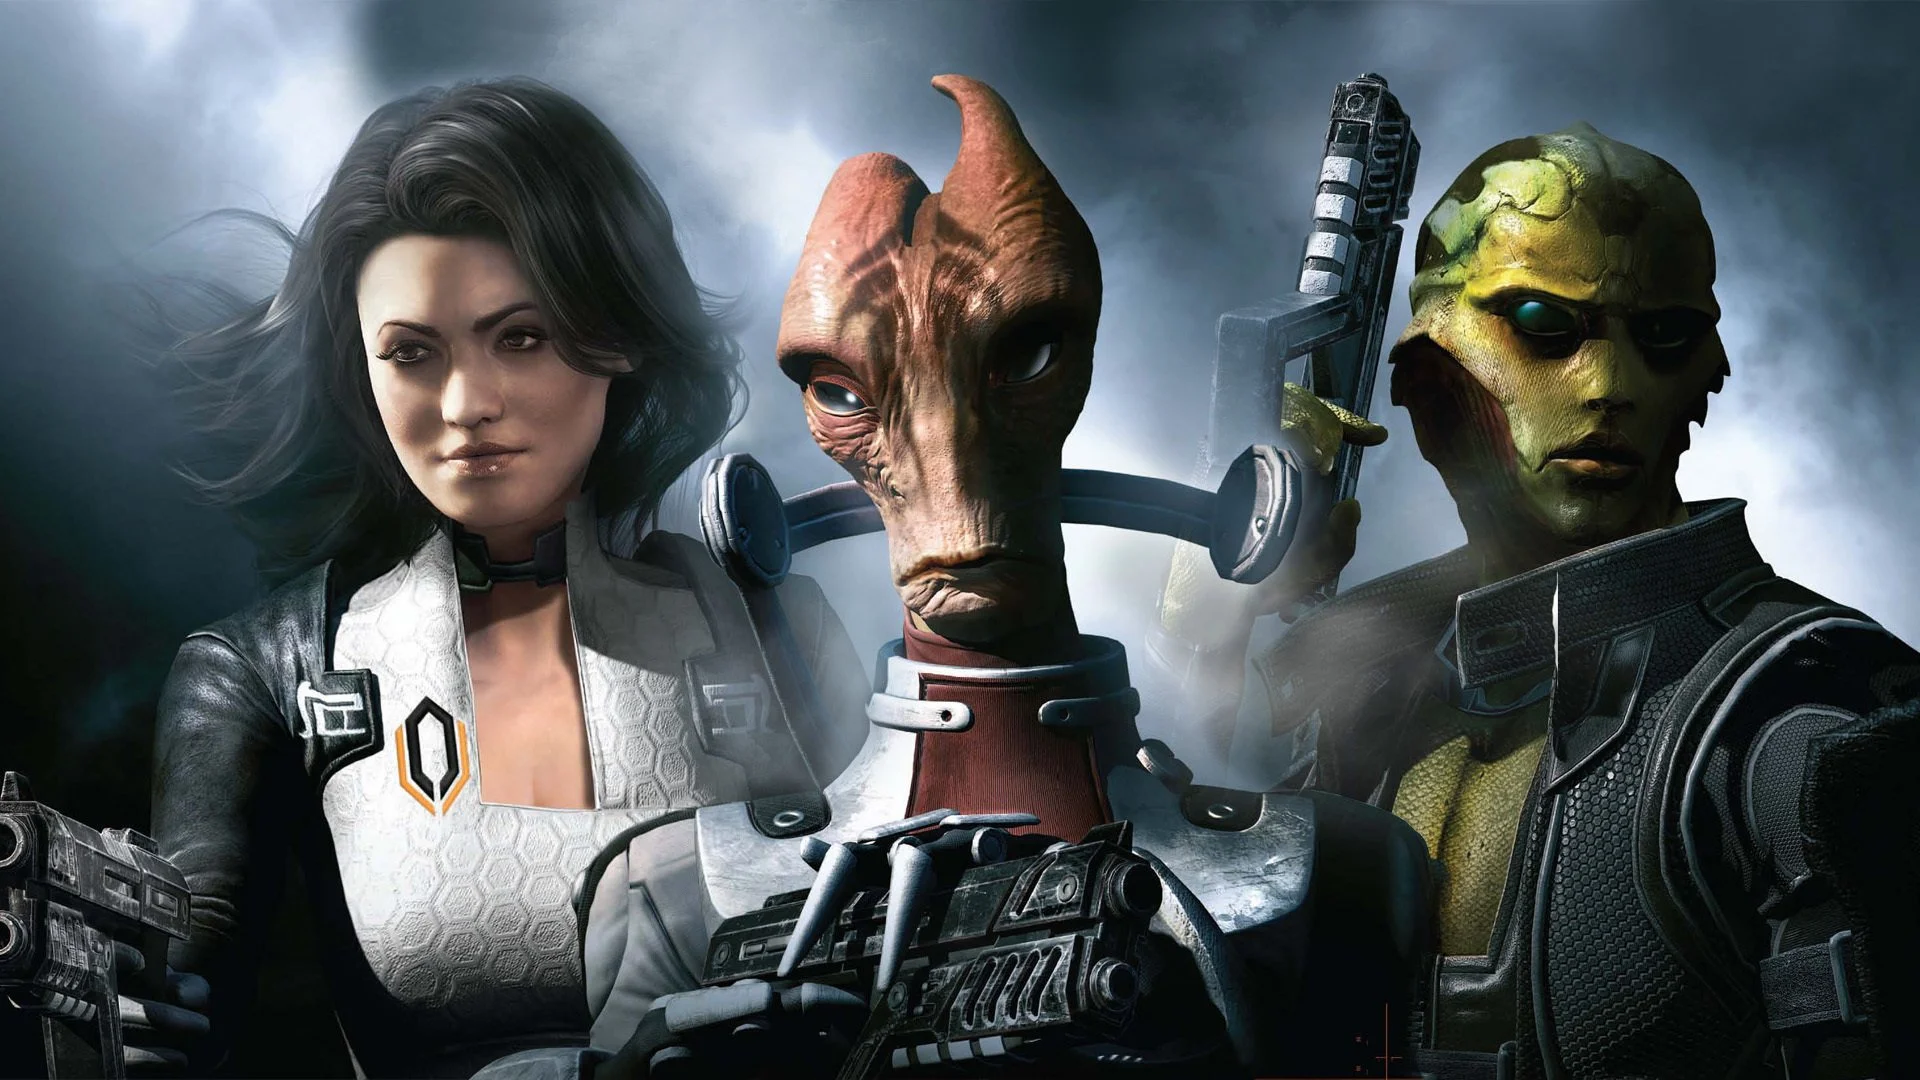 Новая книга основанная на сеттинге игры Mass Effect выйдет в свет уже в июле этого года, сообщает крупнейший книжный обозреватель bookingworm.com. Авторами книги выступили Дрю Карпишин и Уильям Дитс. В качестве консультантов, к созданию книги были привлечены Мак Уолтерс (сценарий Mass Effect 3) и Джон Миллер (сценарий к серии комиксов Mass Effect).